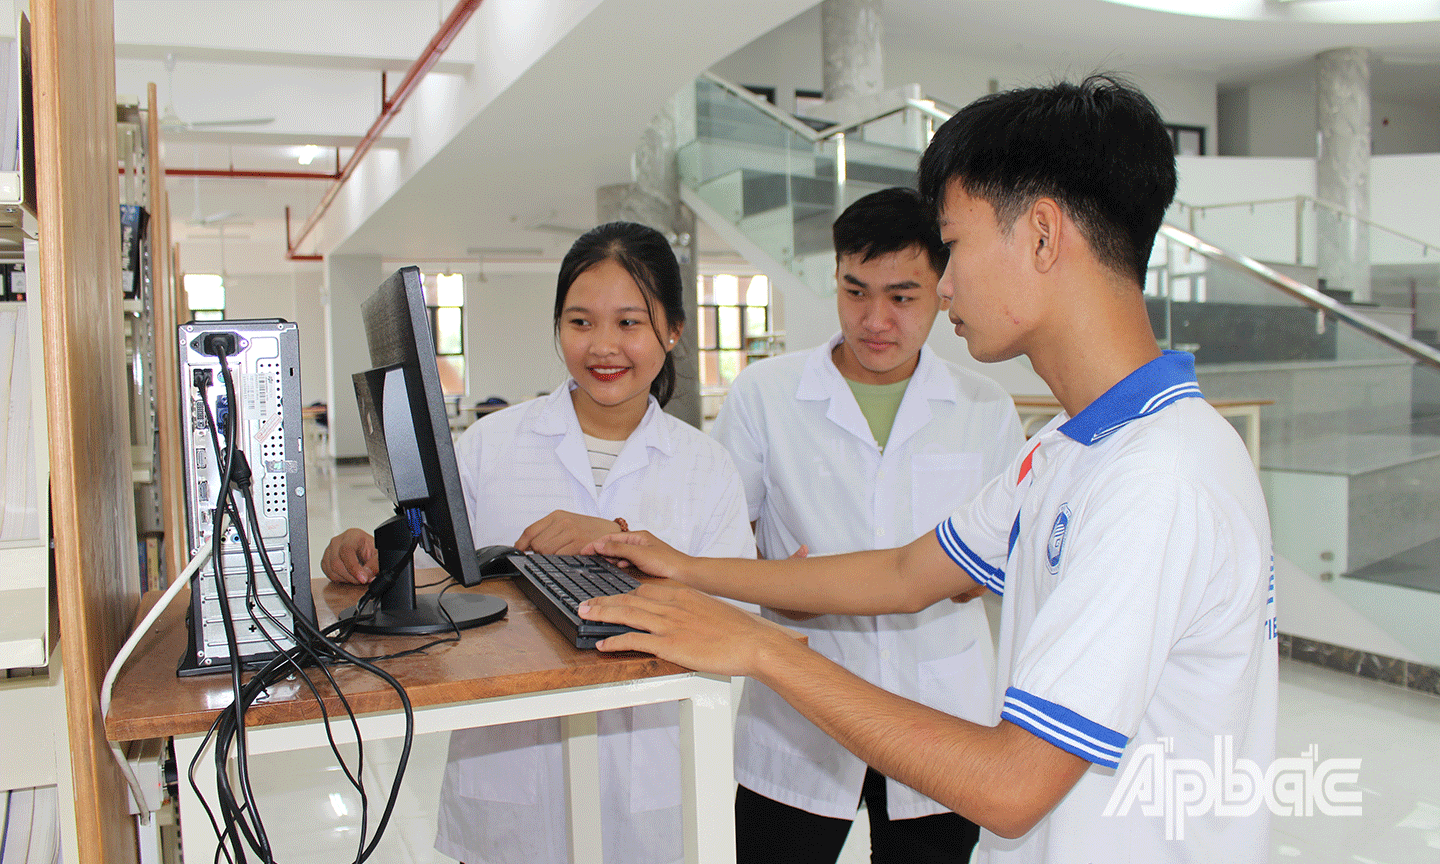 Trường Đại học Tiền Giang được đầu tư cơ sở vật chất khang trang, gồm 2 cơ sở, đáp ứng tốt cho quá trình học tập, nghiên cứu của sinh viên. 